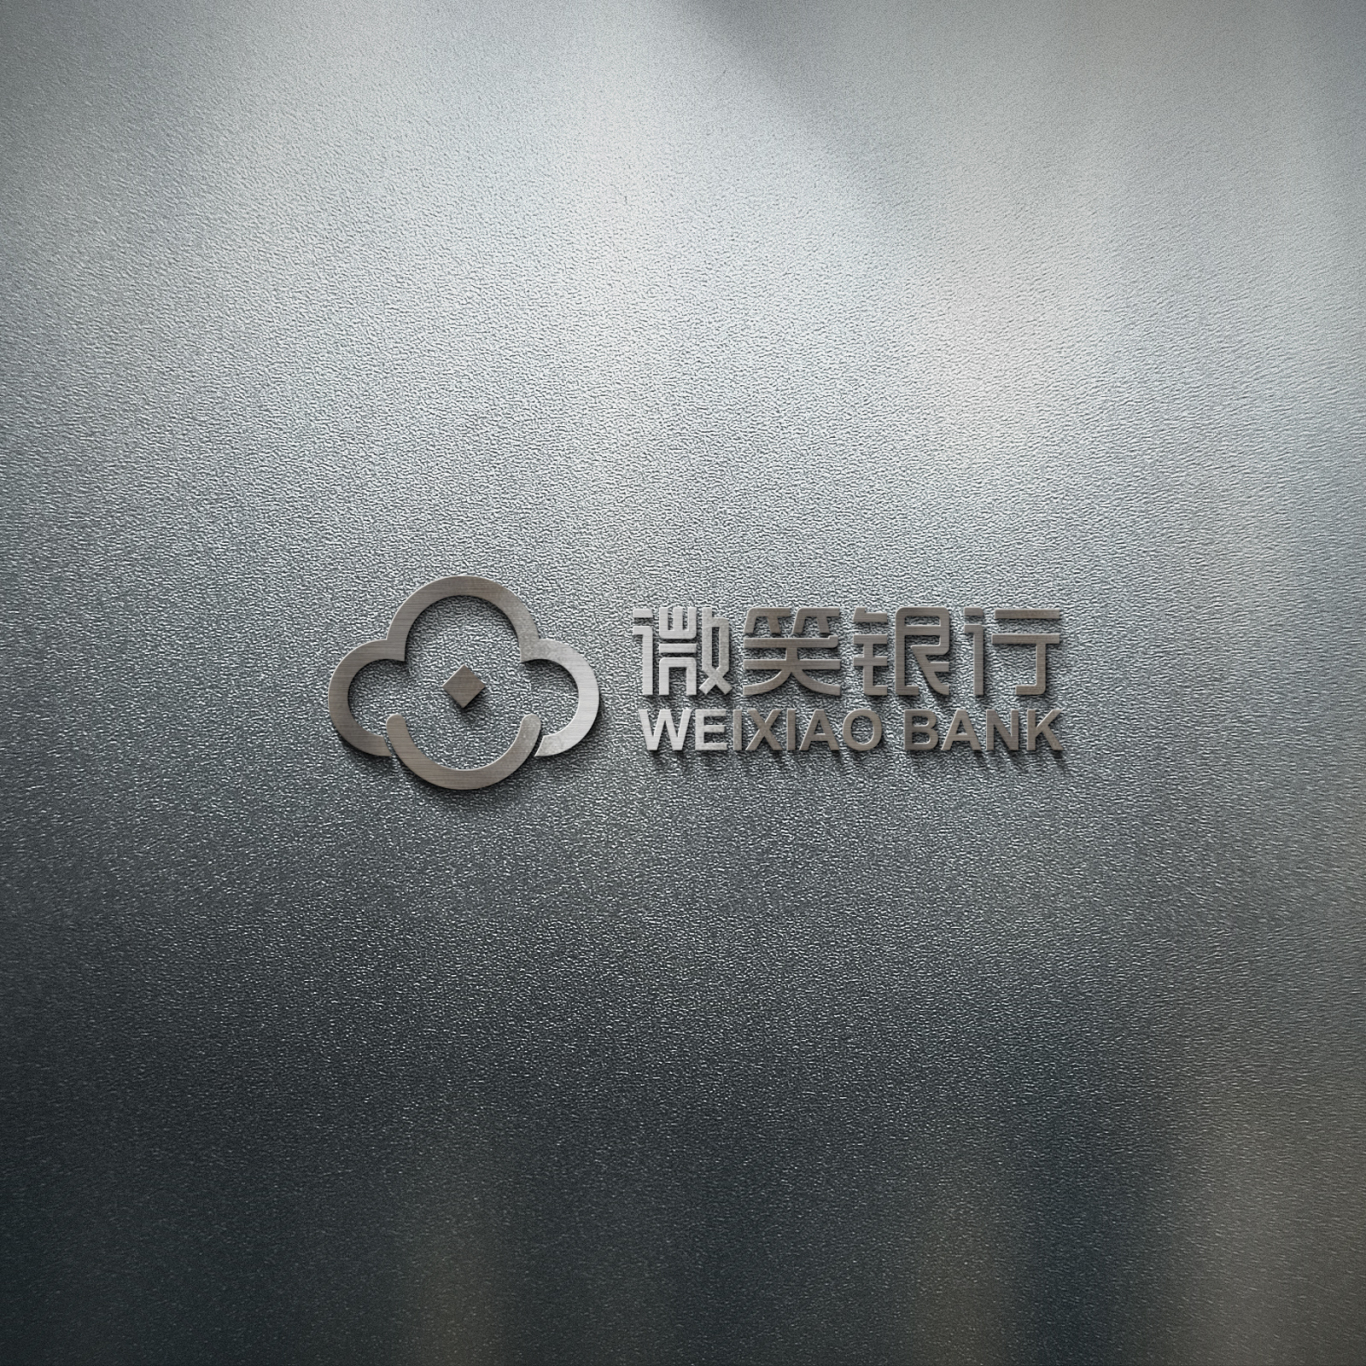 山西兴县农村商业银行 下属支行 品牌logo设计图3